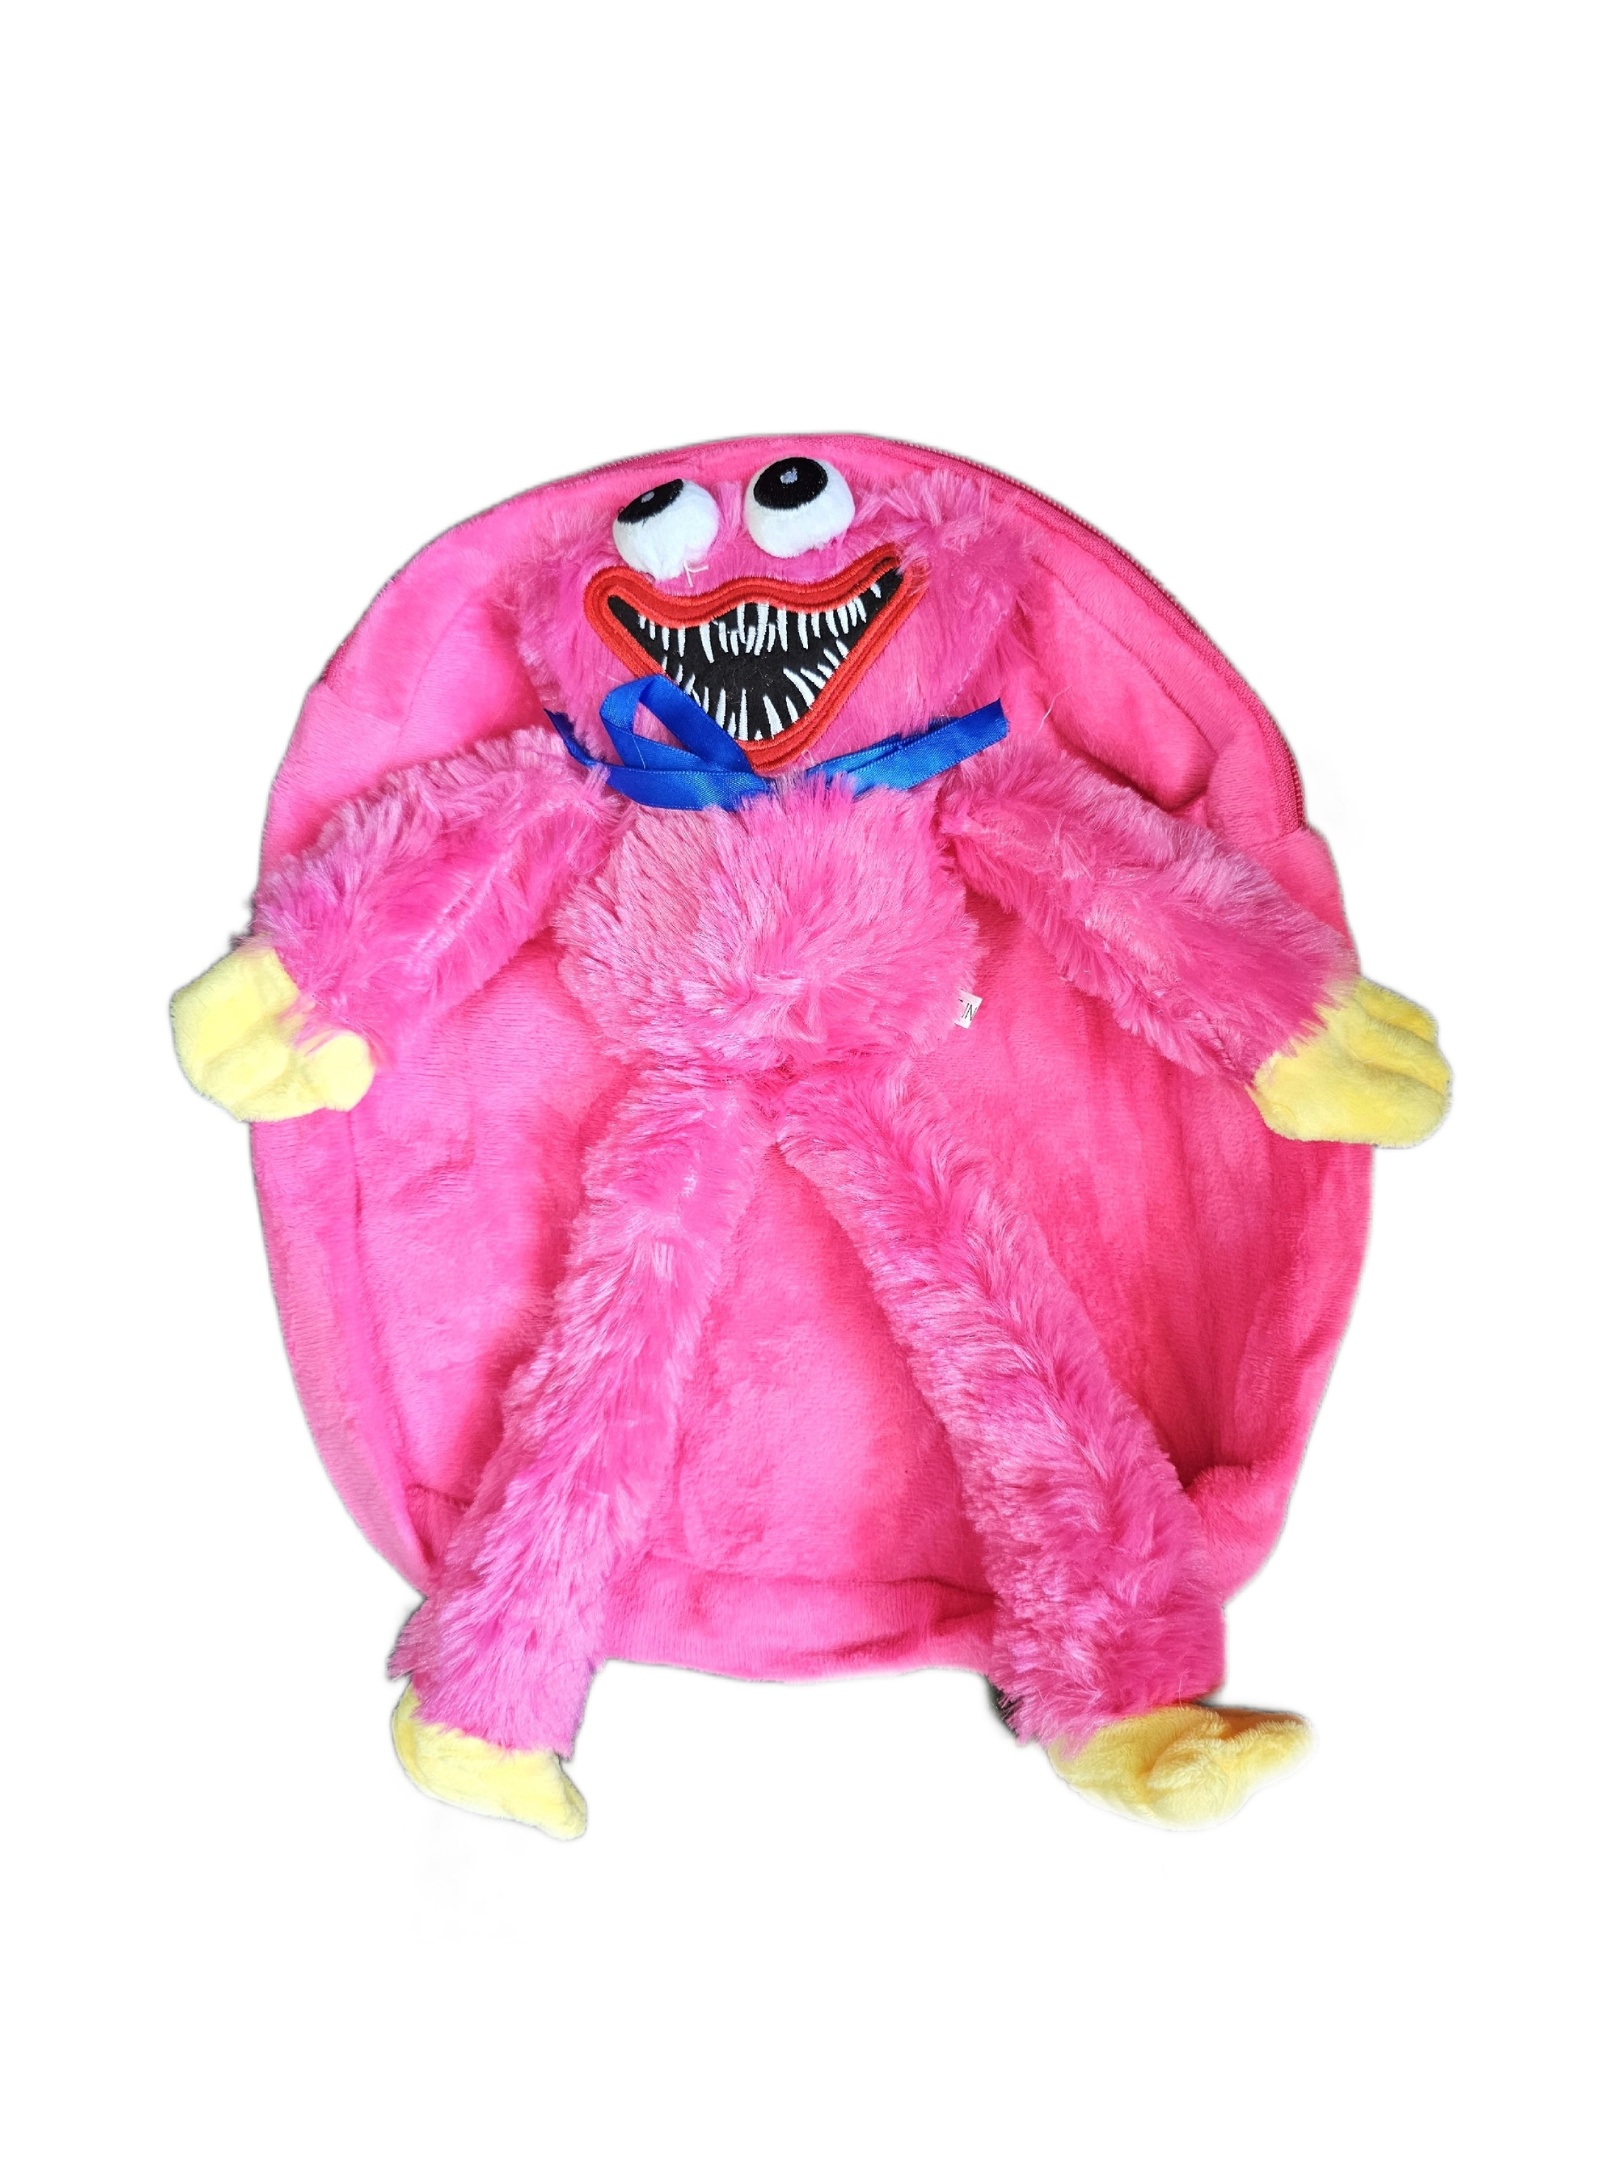 Рюкзак детский плюшевый с игрушкой Кисси Мисси Хаги Ваги, цвет розовый книга мисси моппель